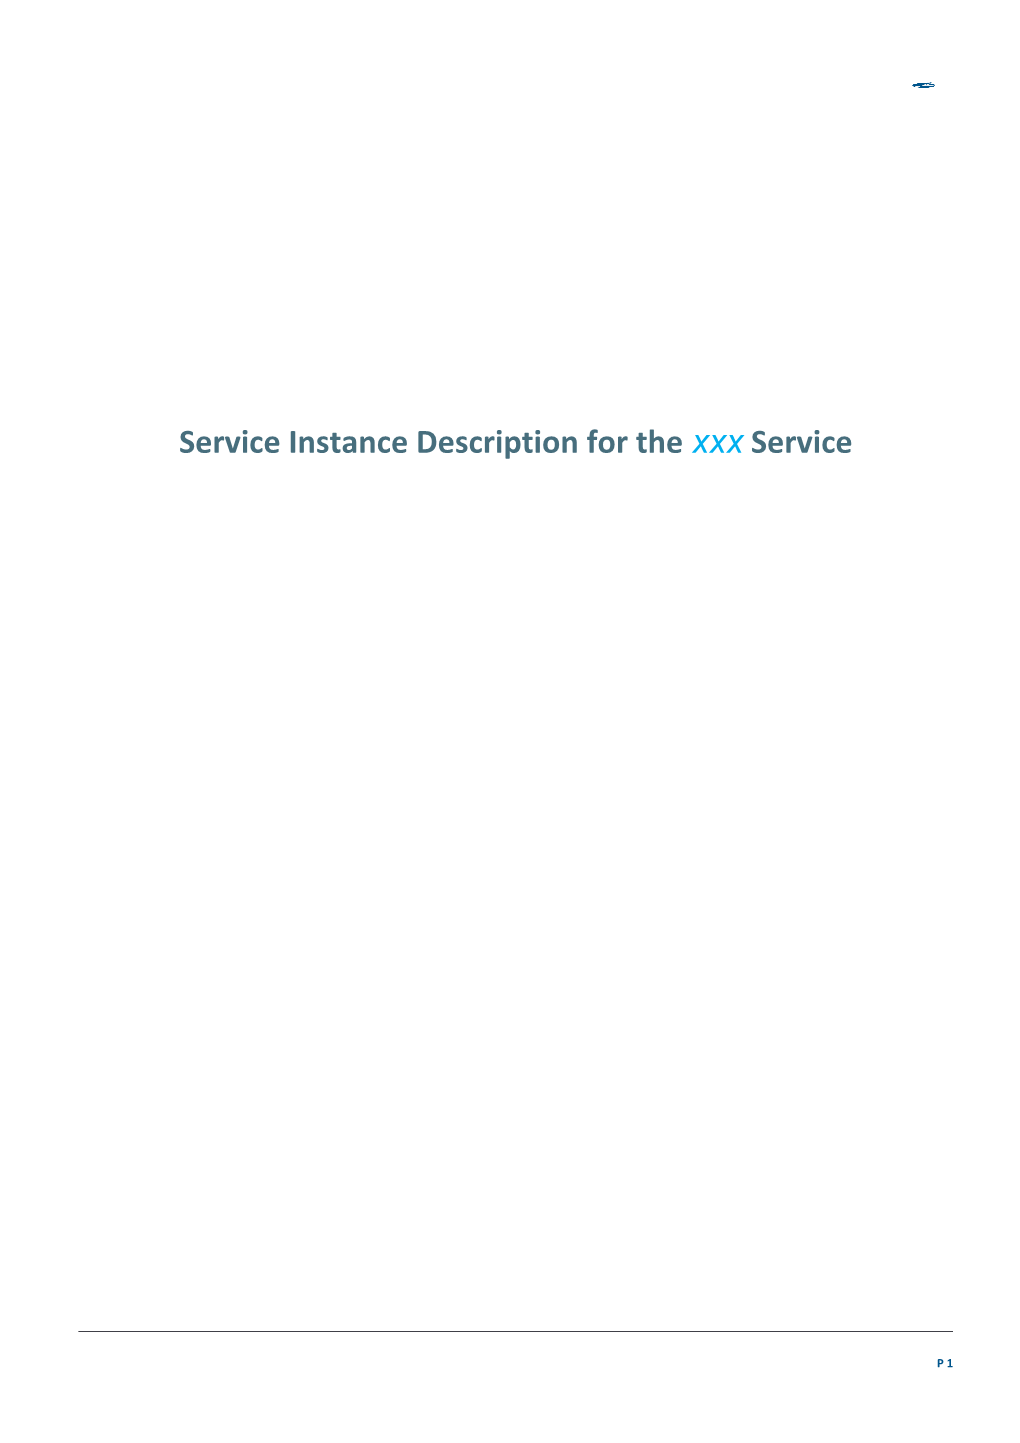 Service Instance Description for the Xxx Service